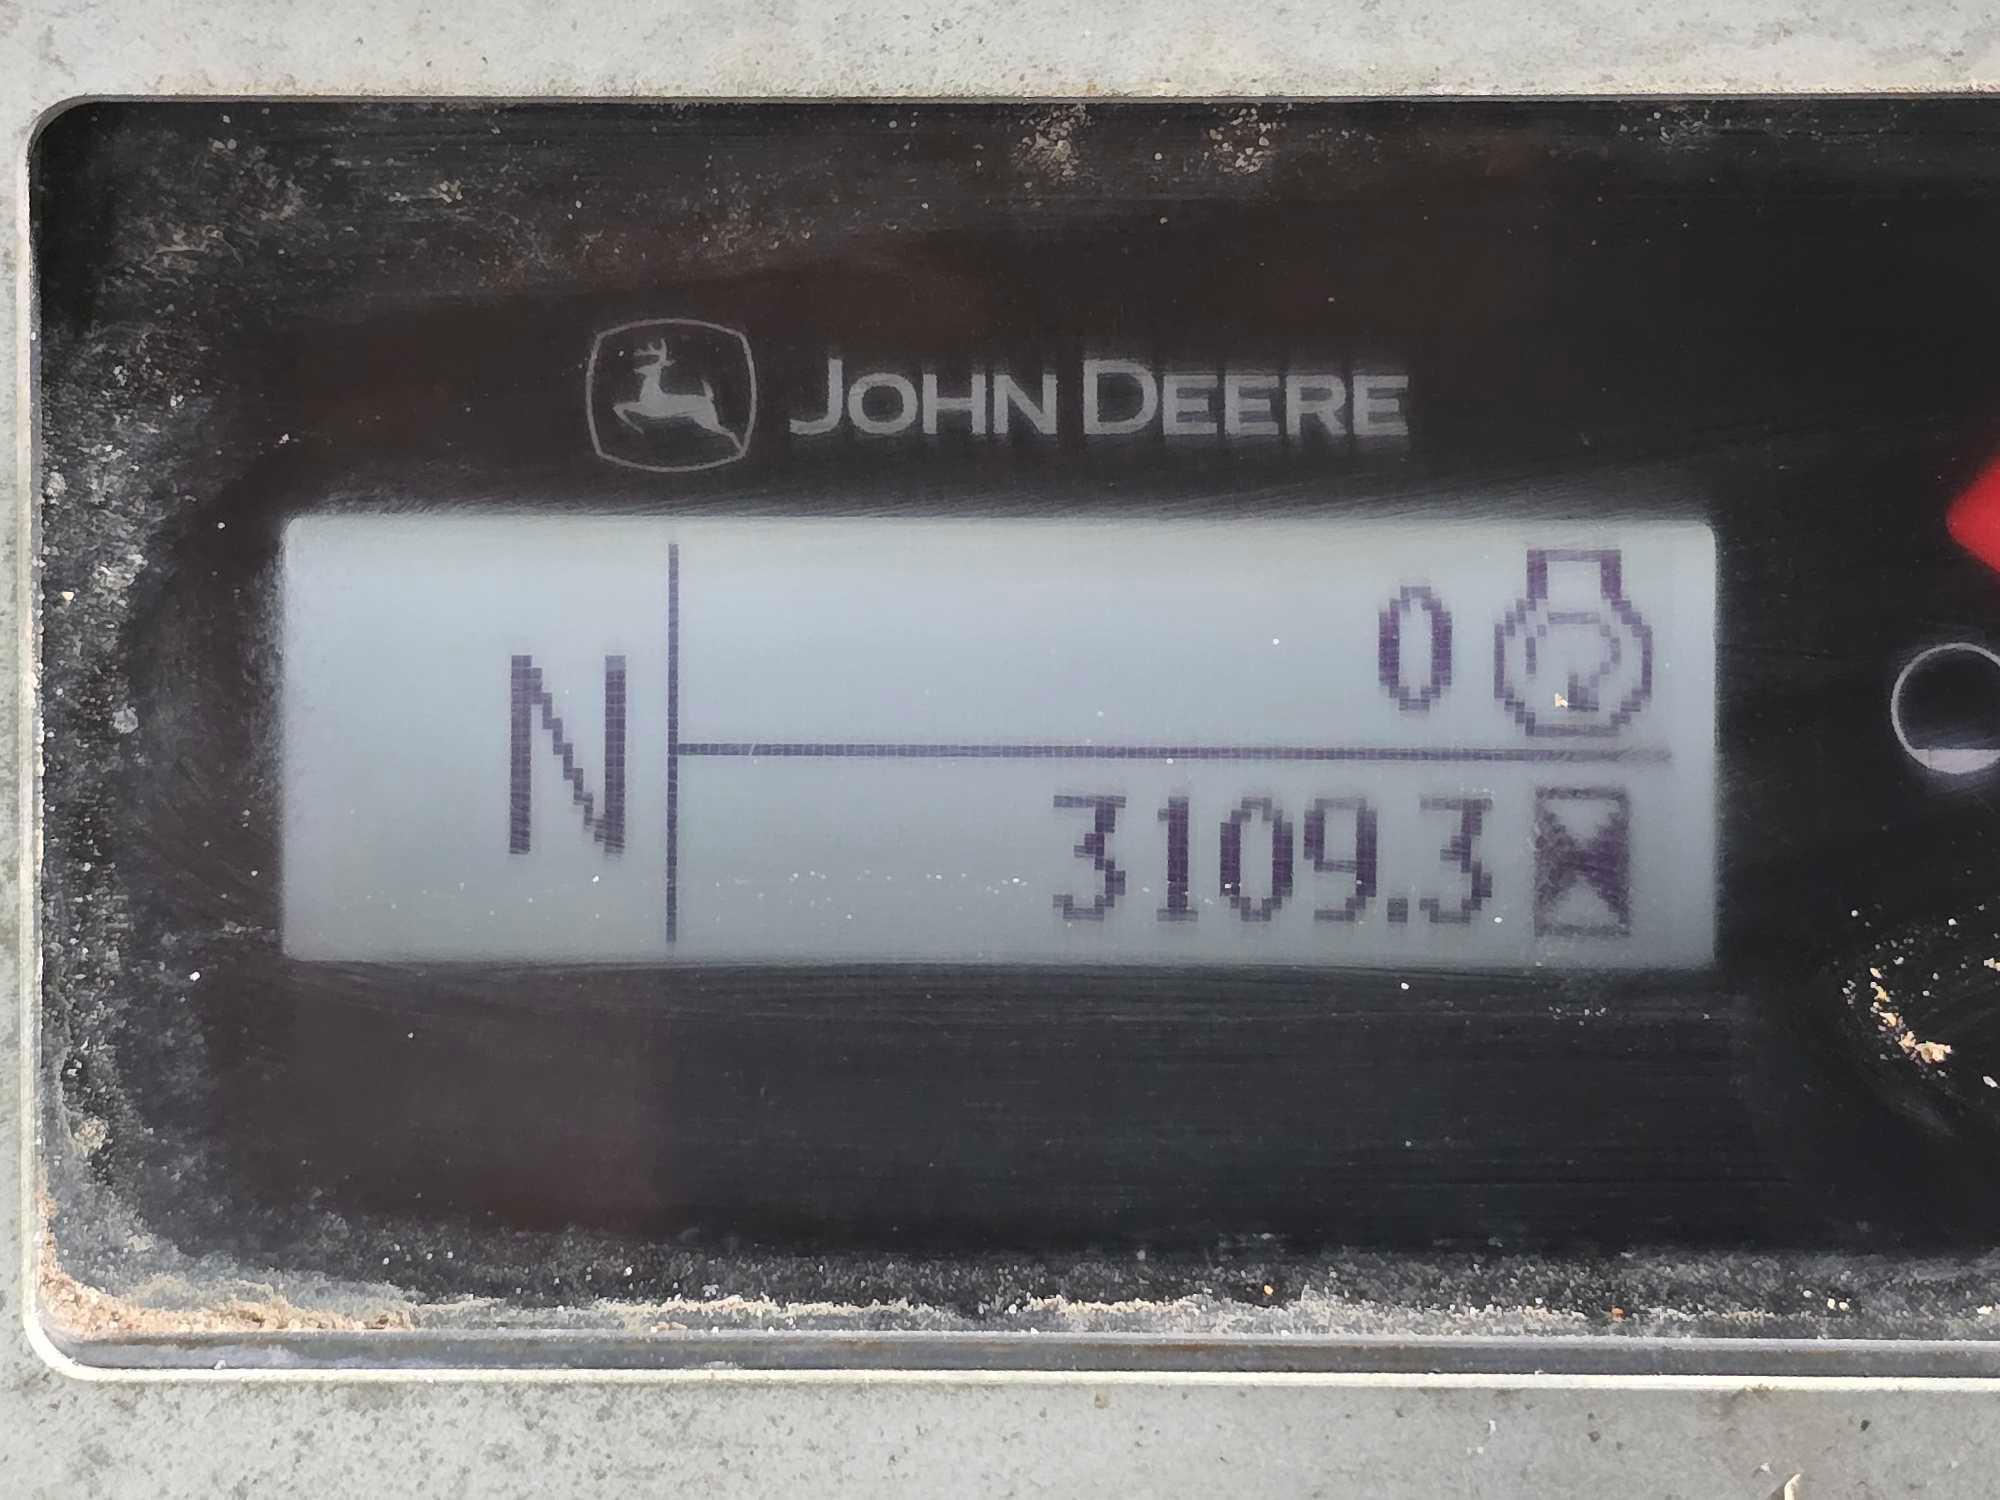 2019 John Deere 310L Backhoe Loader